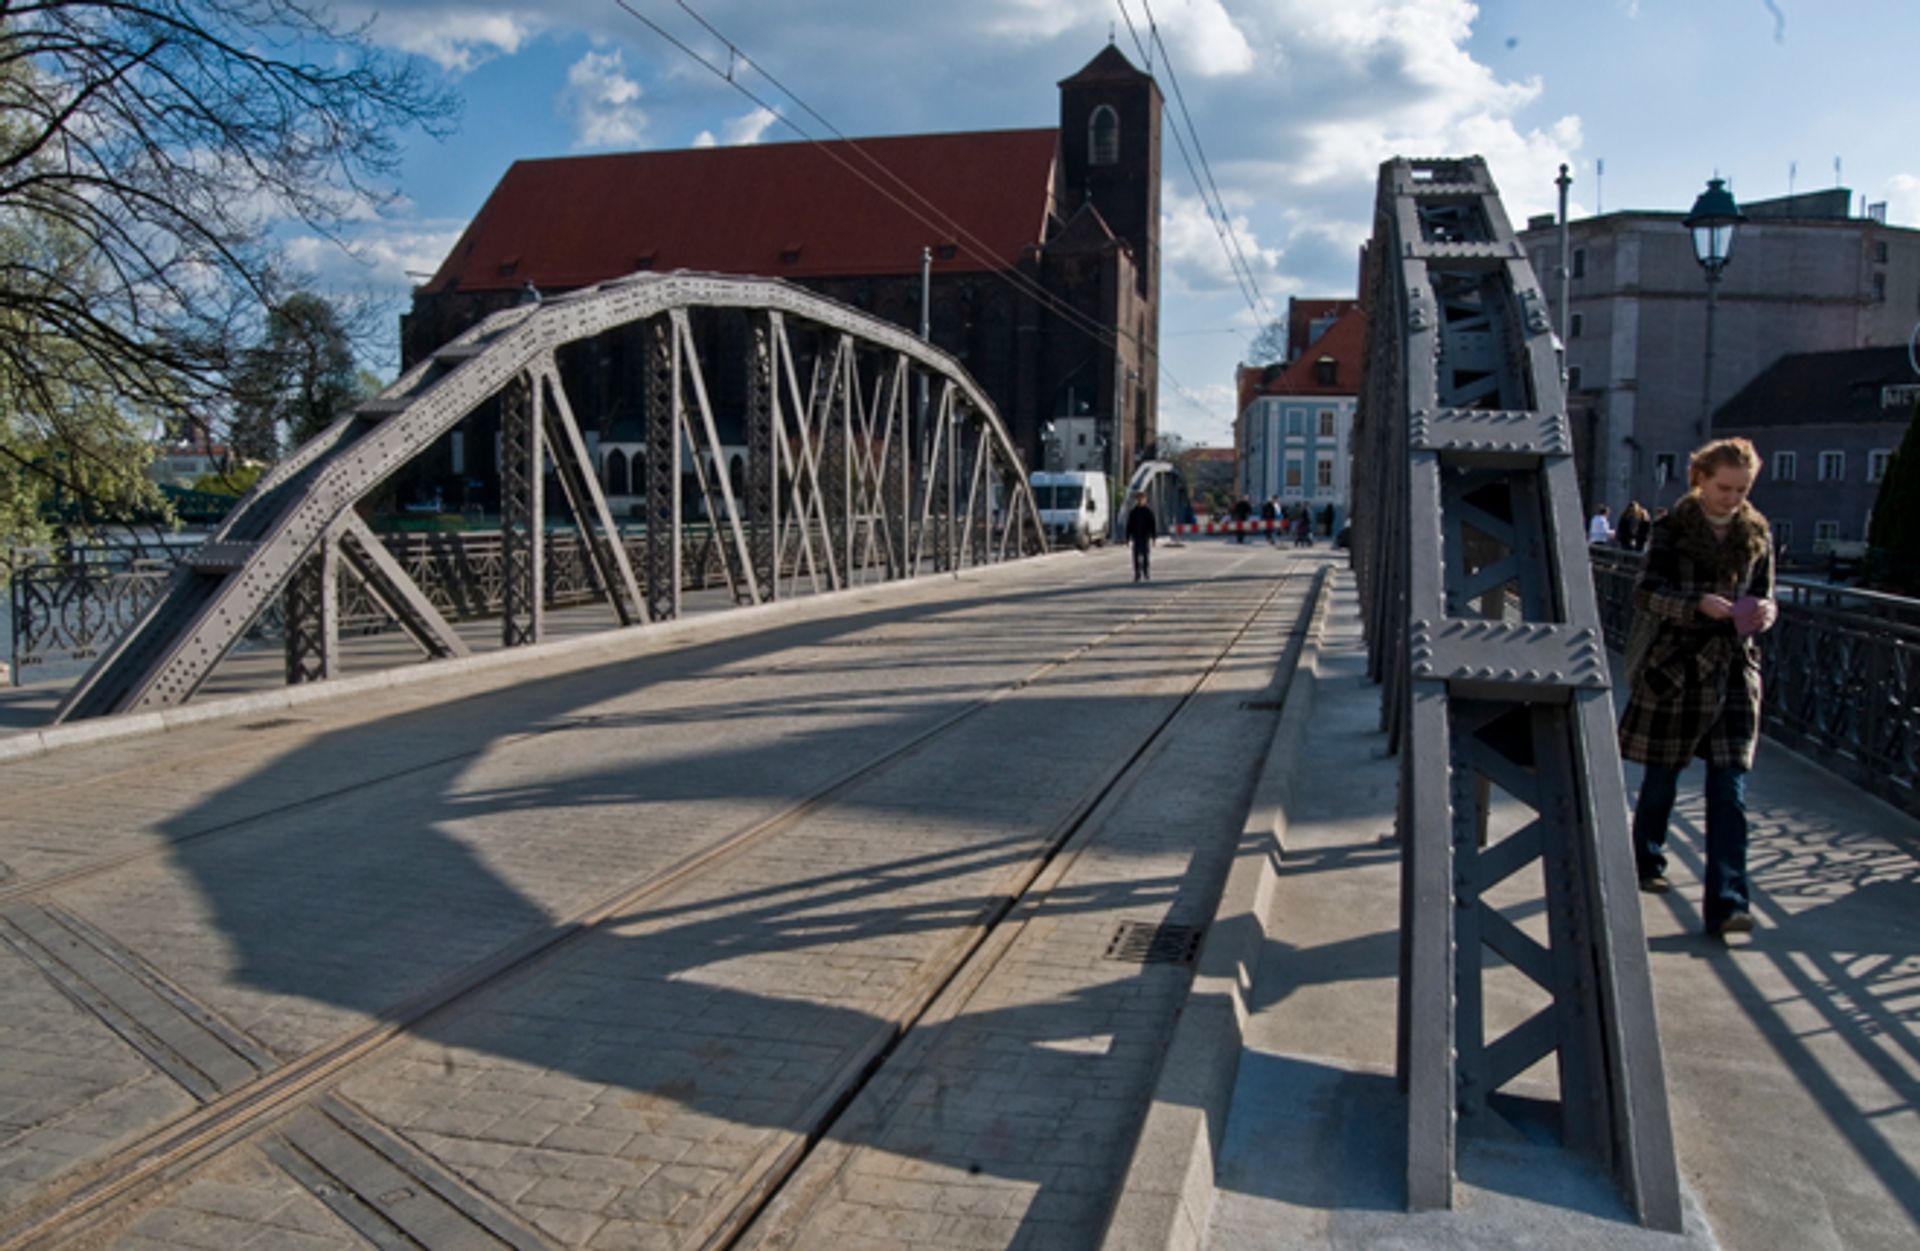  Po trzech latach tramwaje wracają na wyremontowane mosty Młyńskie